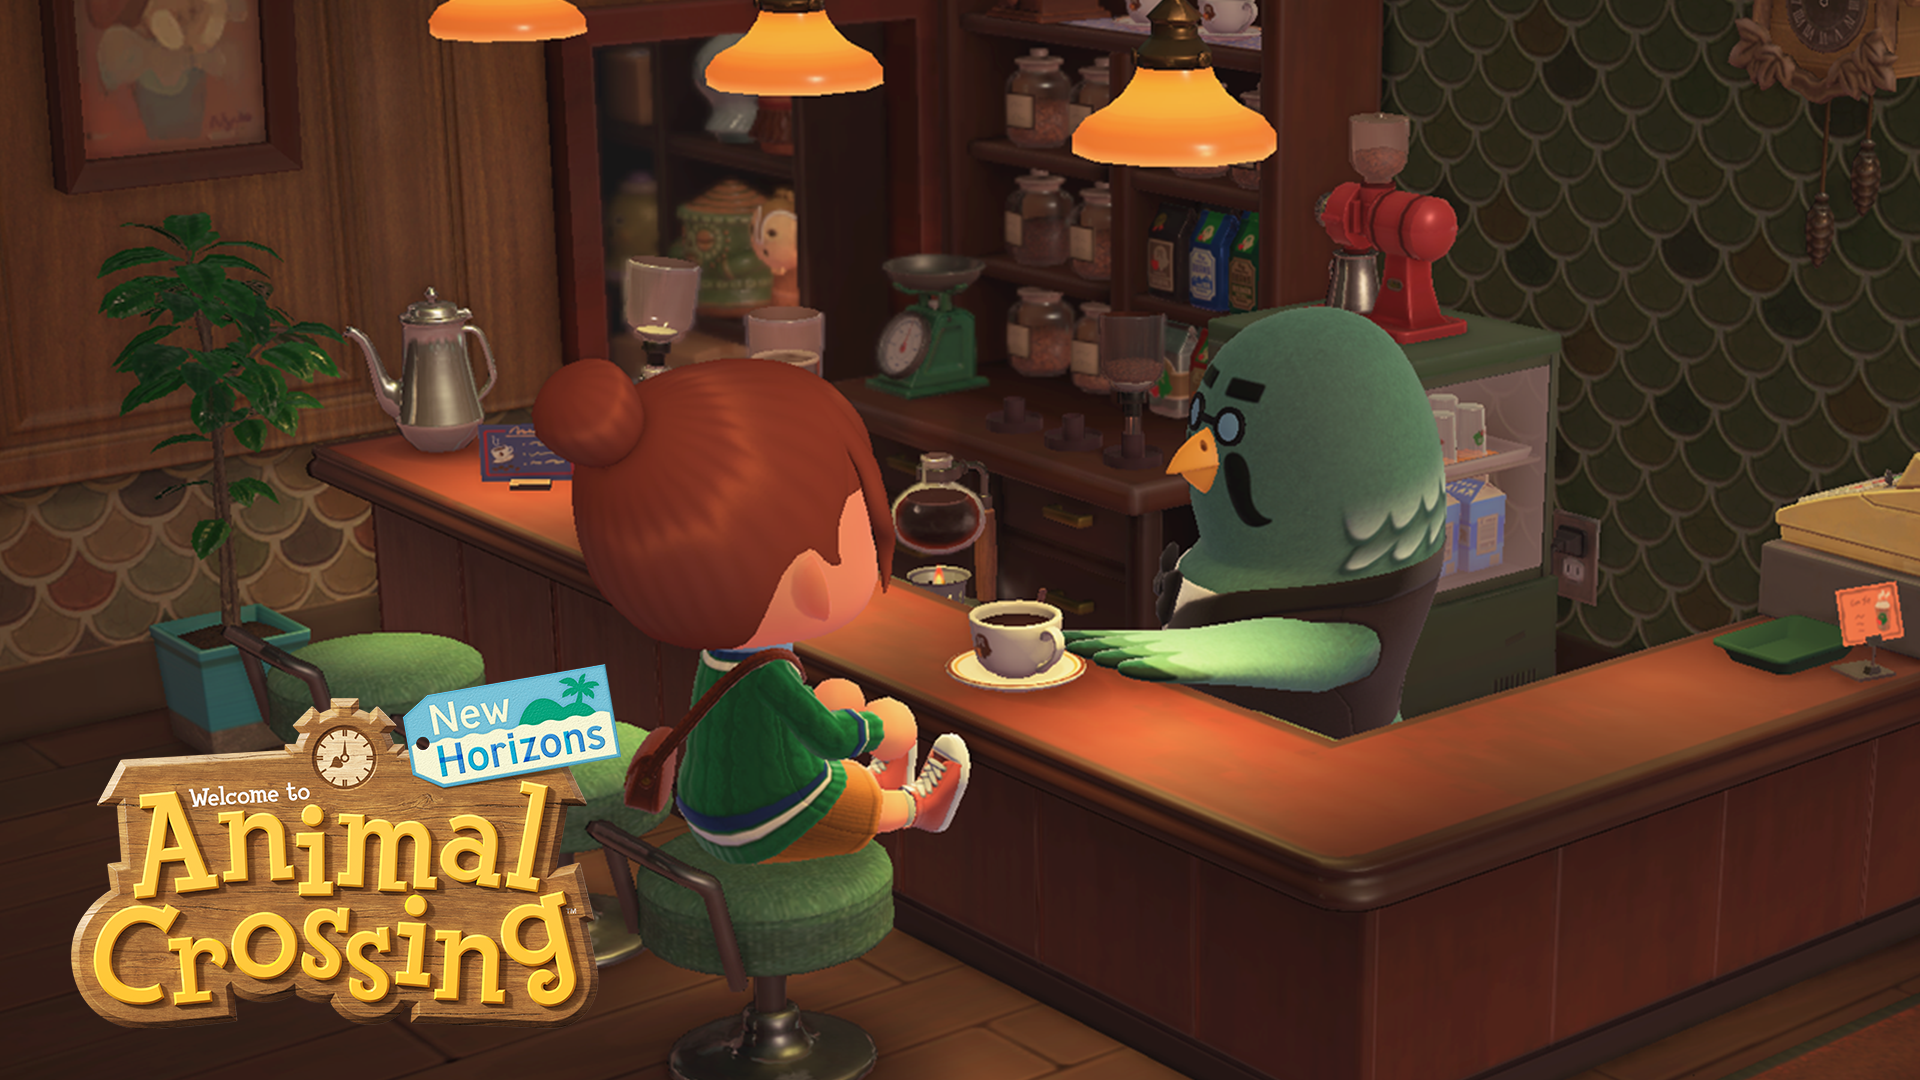 Massive Animal Crossing New Horizons v2.0 Update Revealed C36 Games